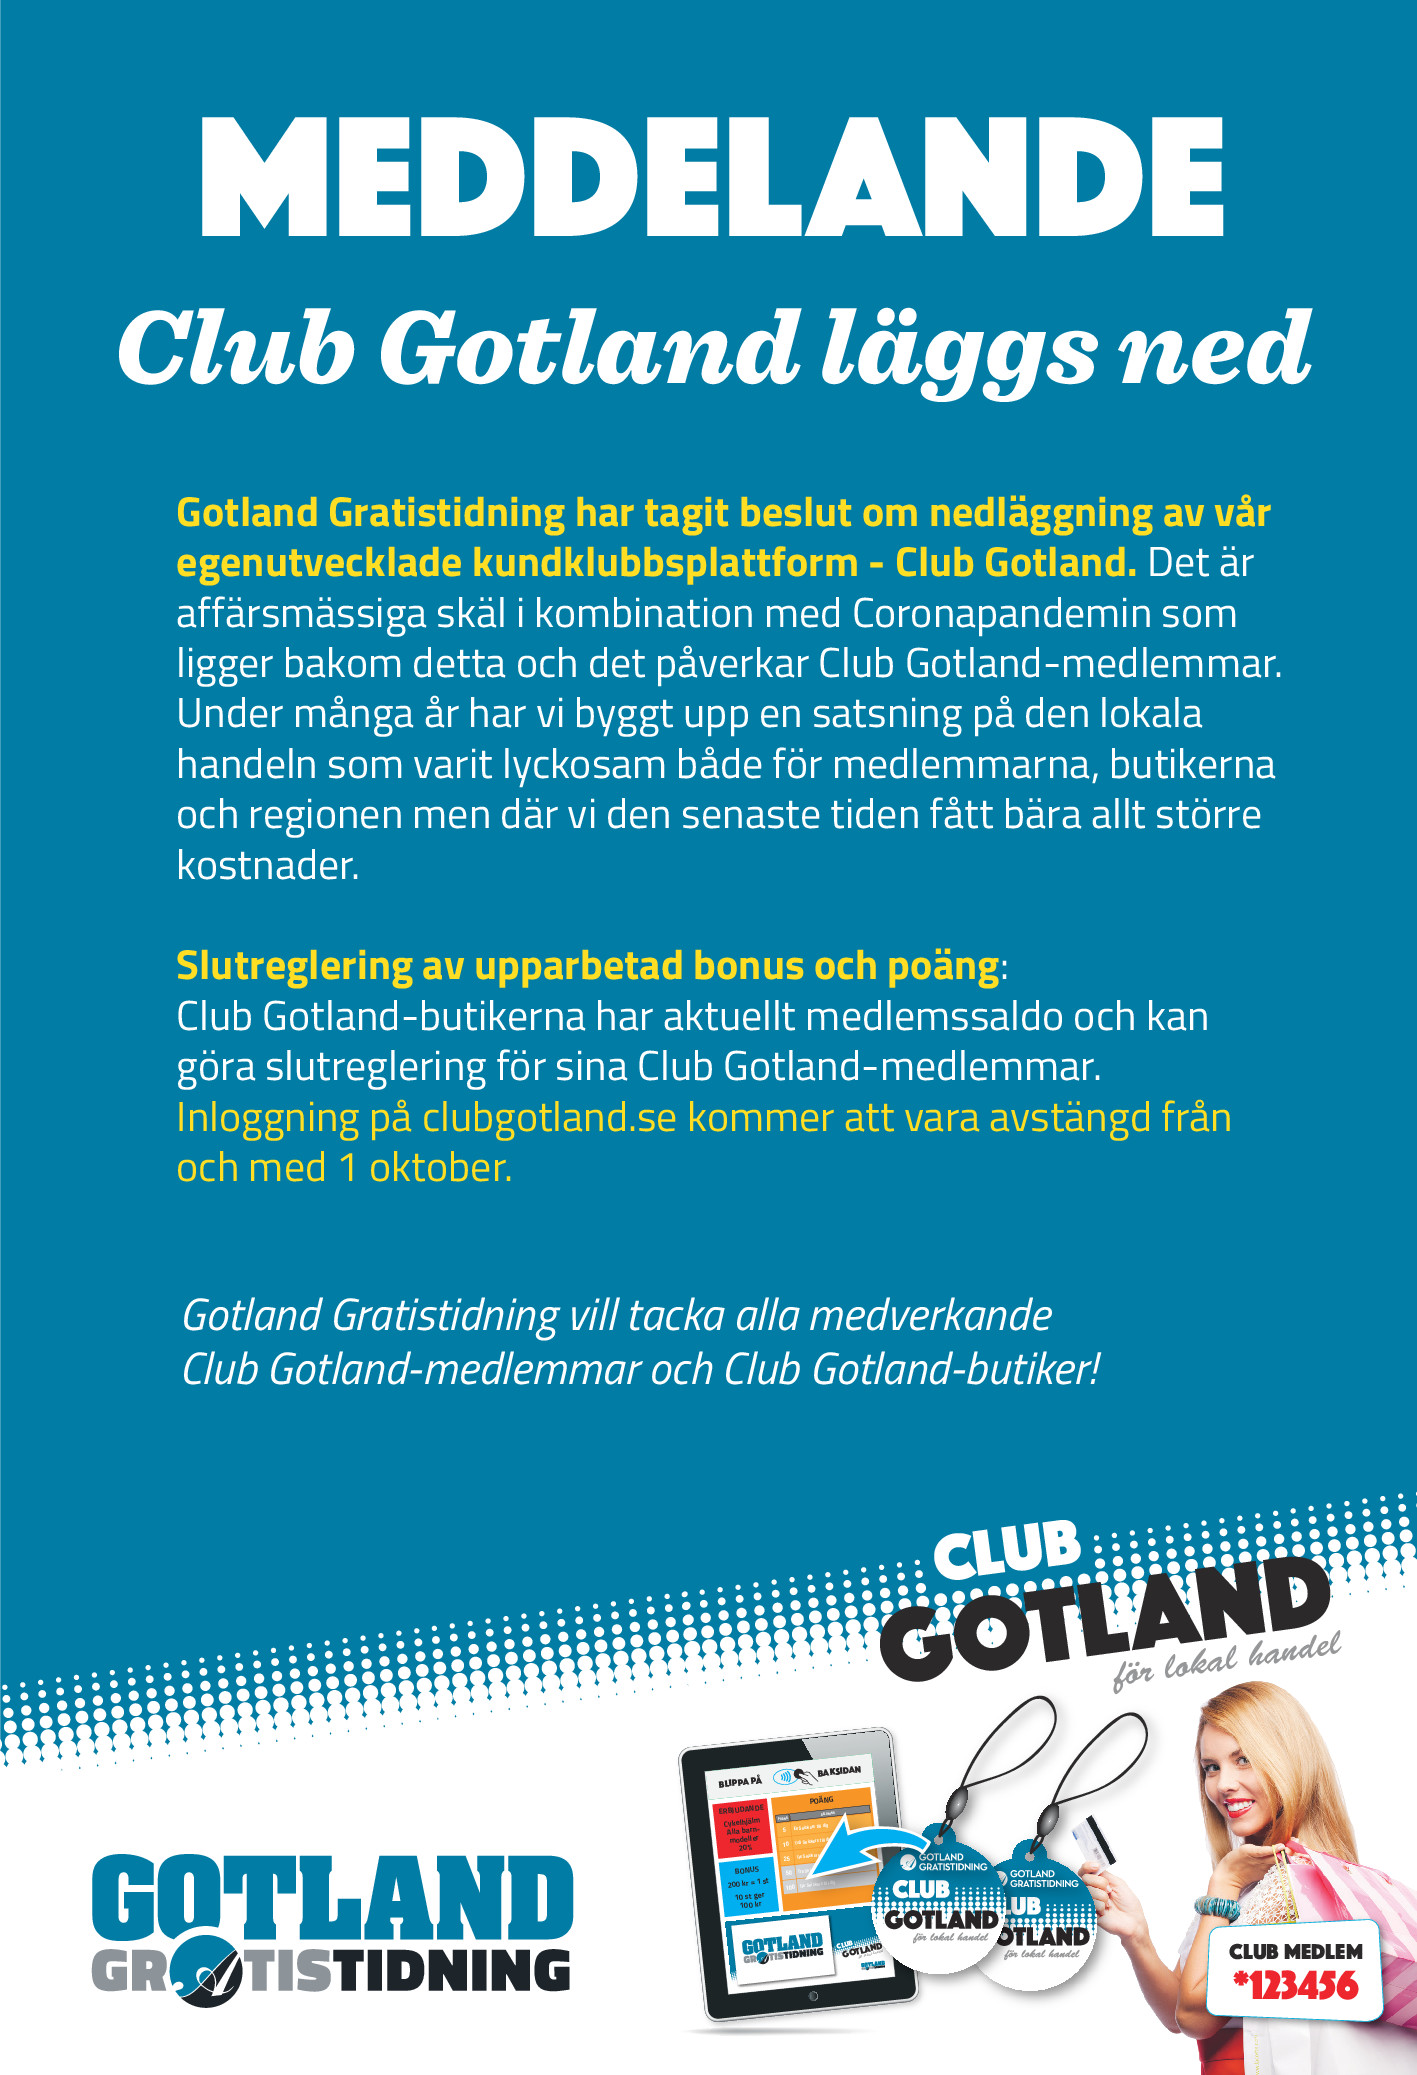 Club Gotland